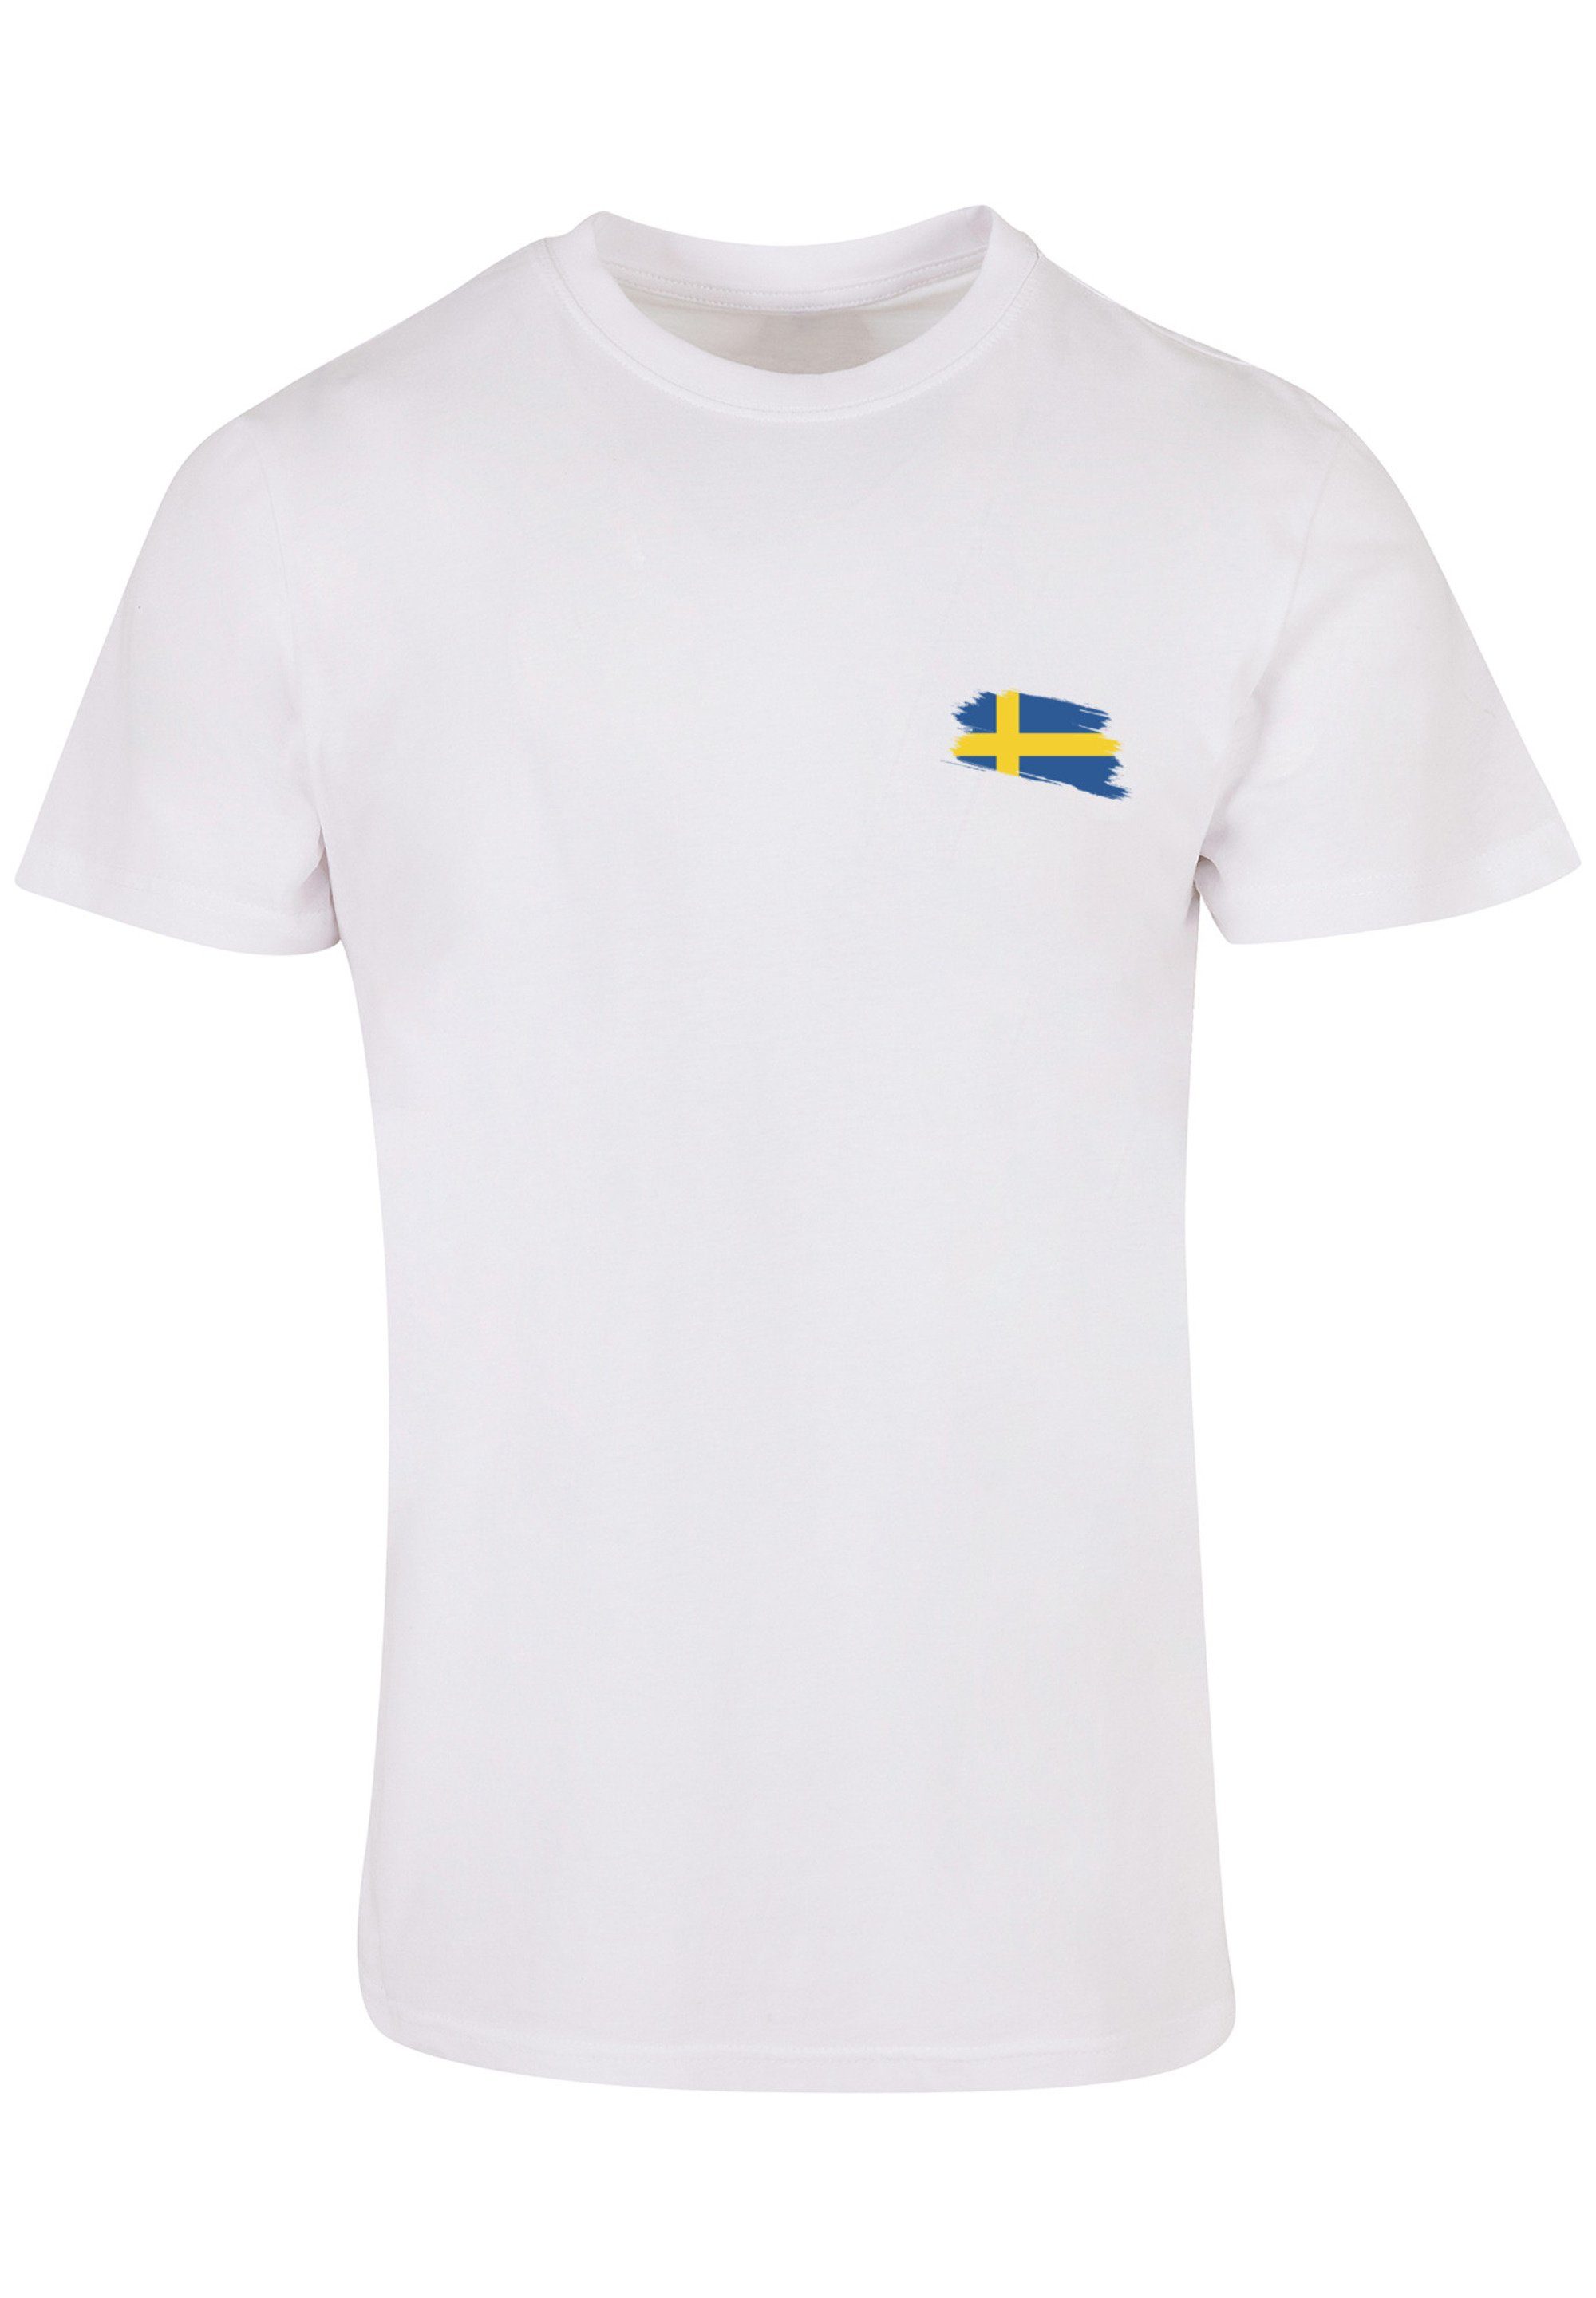 Sweden weiß T-Shirt F4NT4STIC Flagge Print Schweden